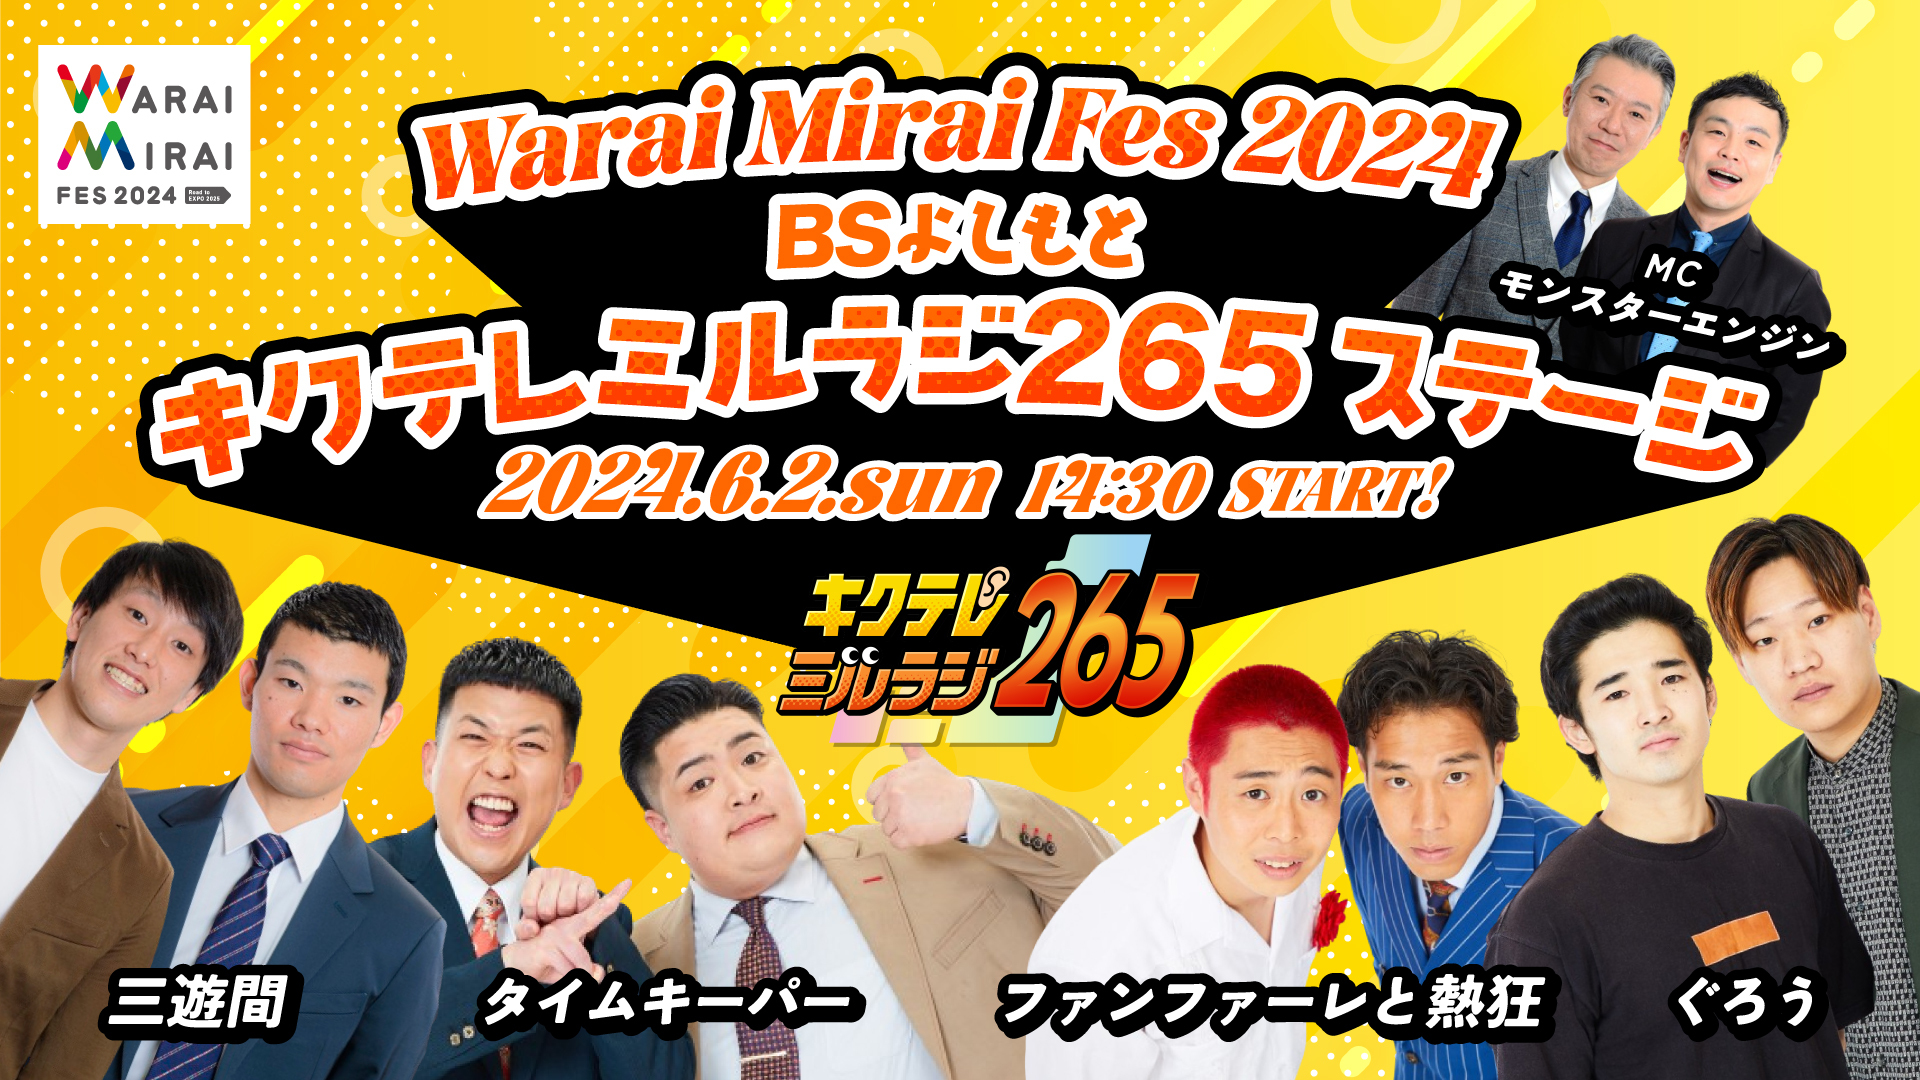 Warai Mirai Fes 2024 BSよしもと キクテレミルラジ265 ステージ